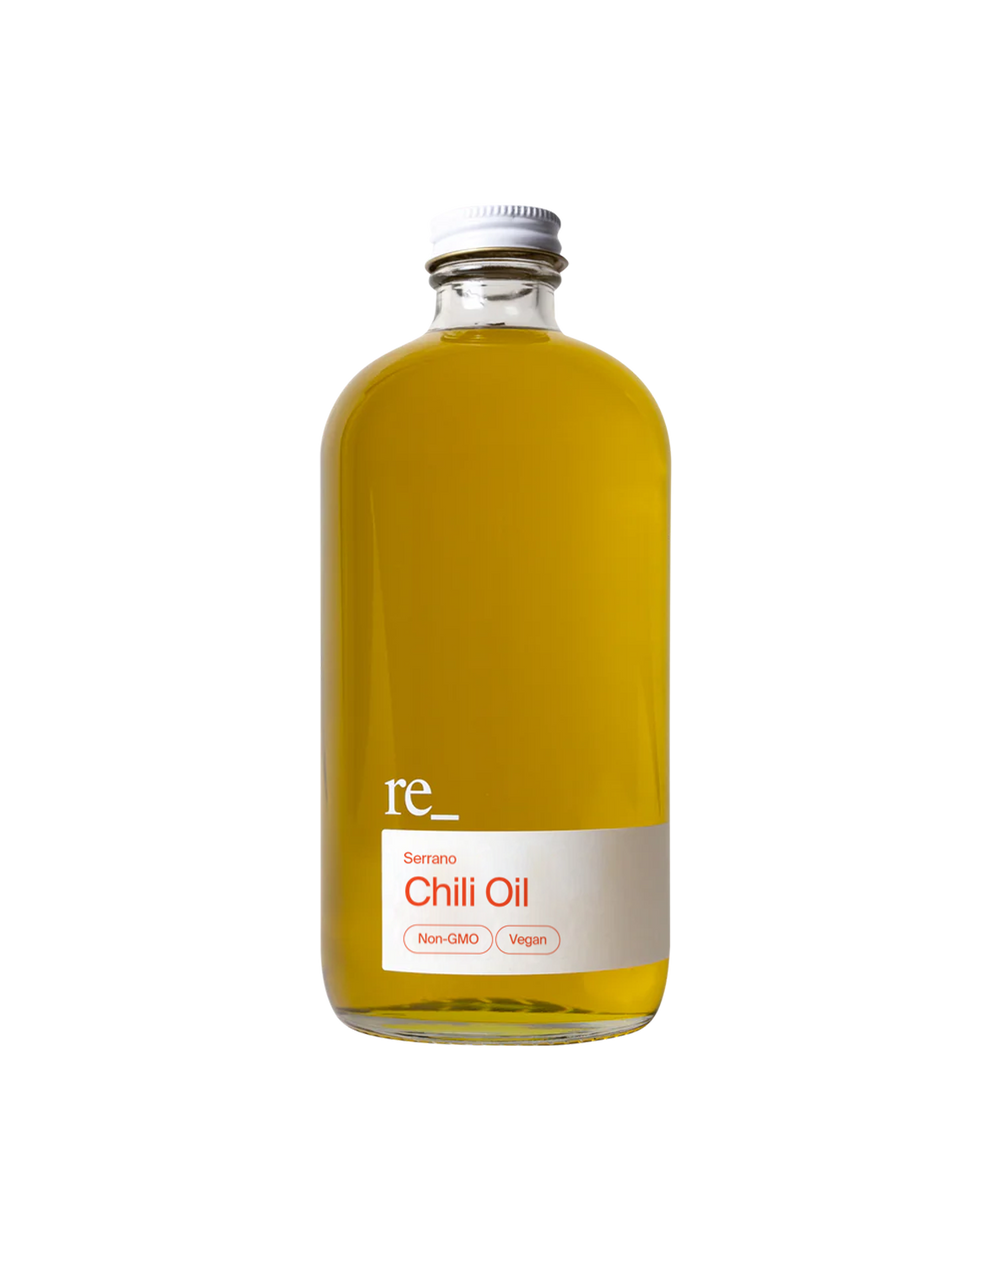 Chili Oil, Serrano, Bottle re_